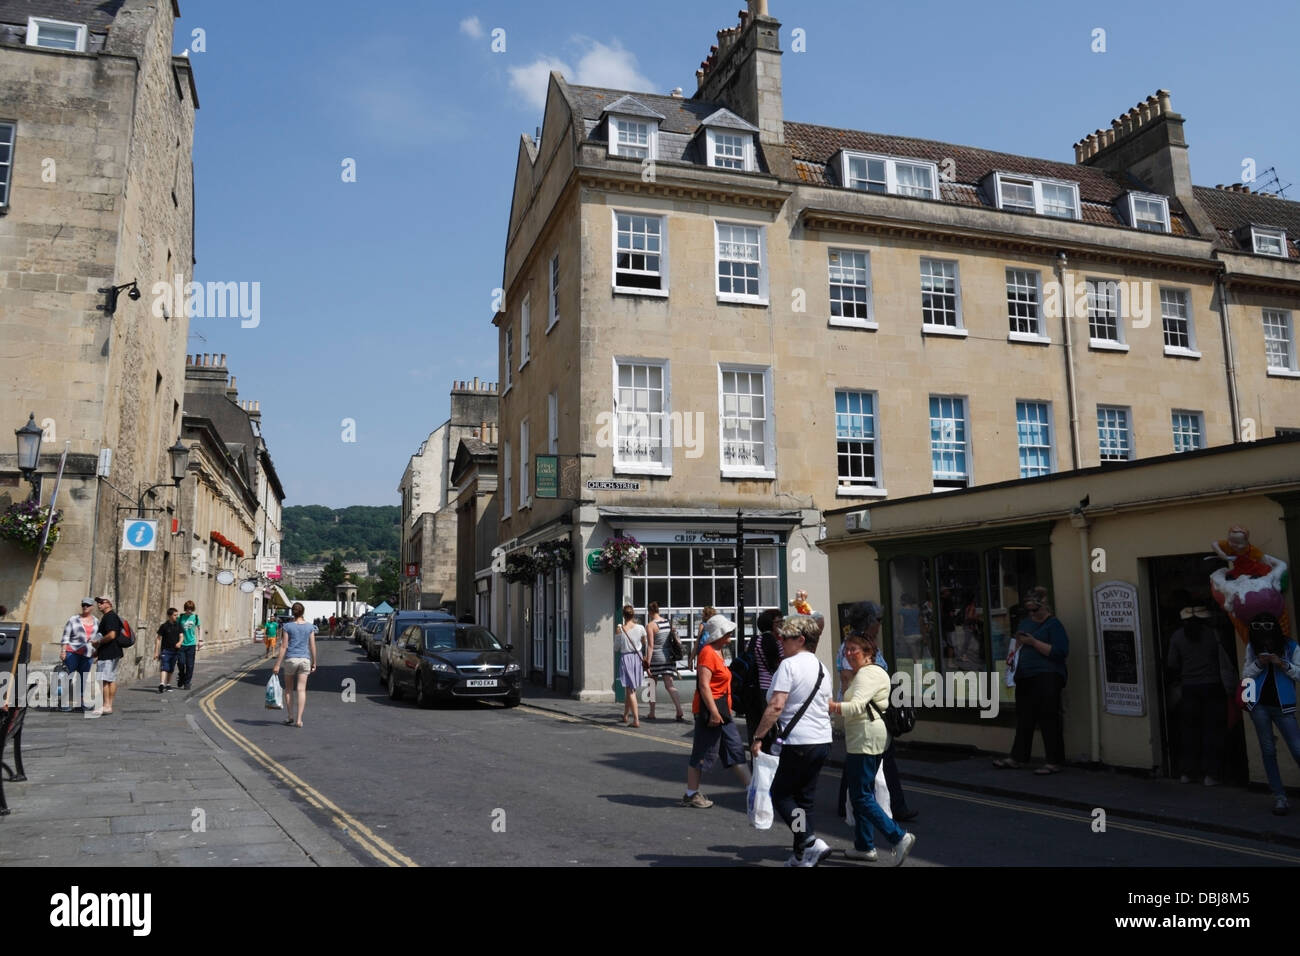 People walking across a street in Bath England UK Stock Photo